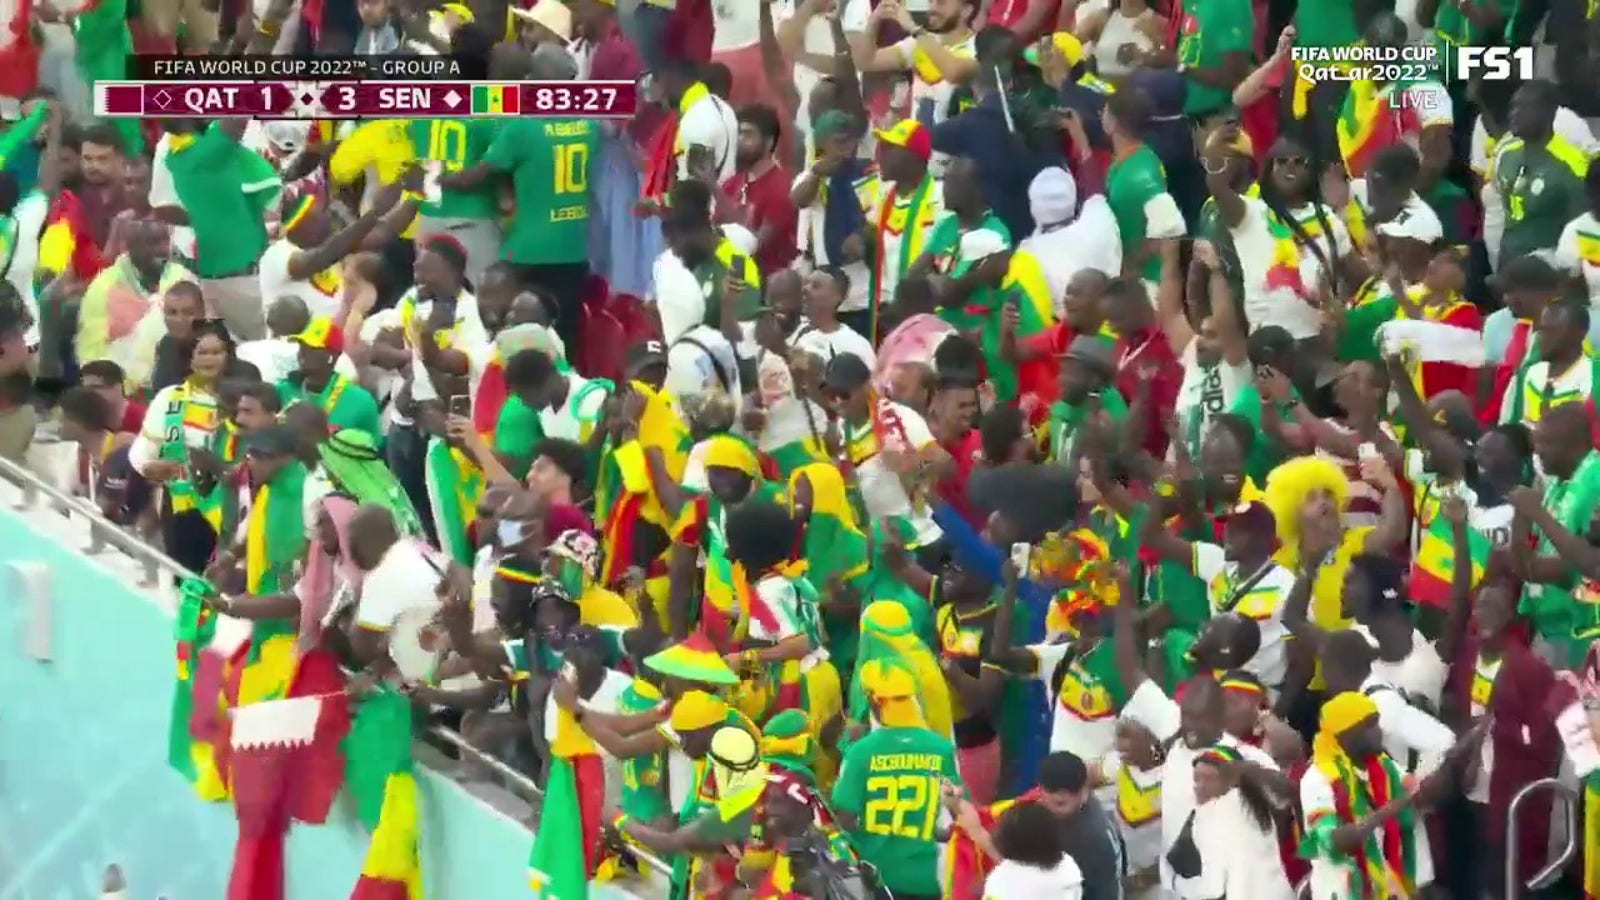 Dieng's goal helps Senegal extend their lead